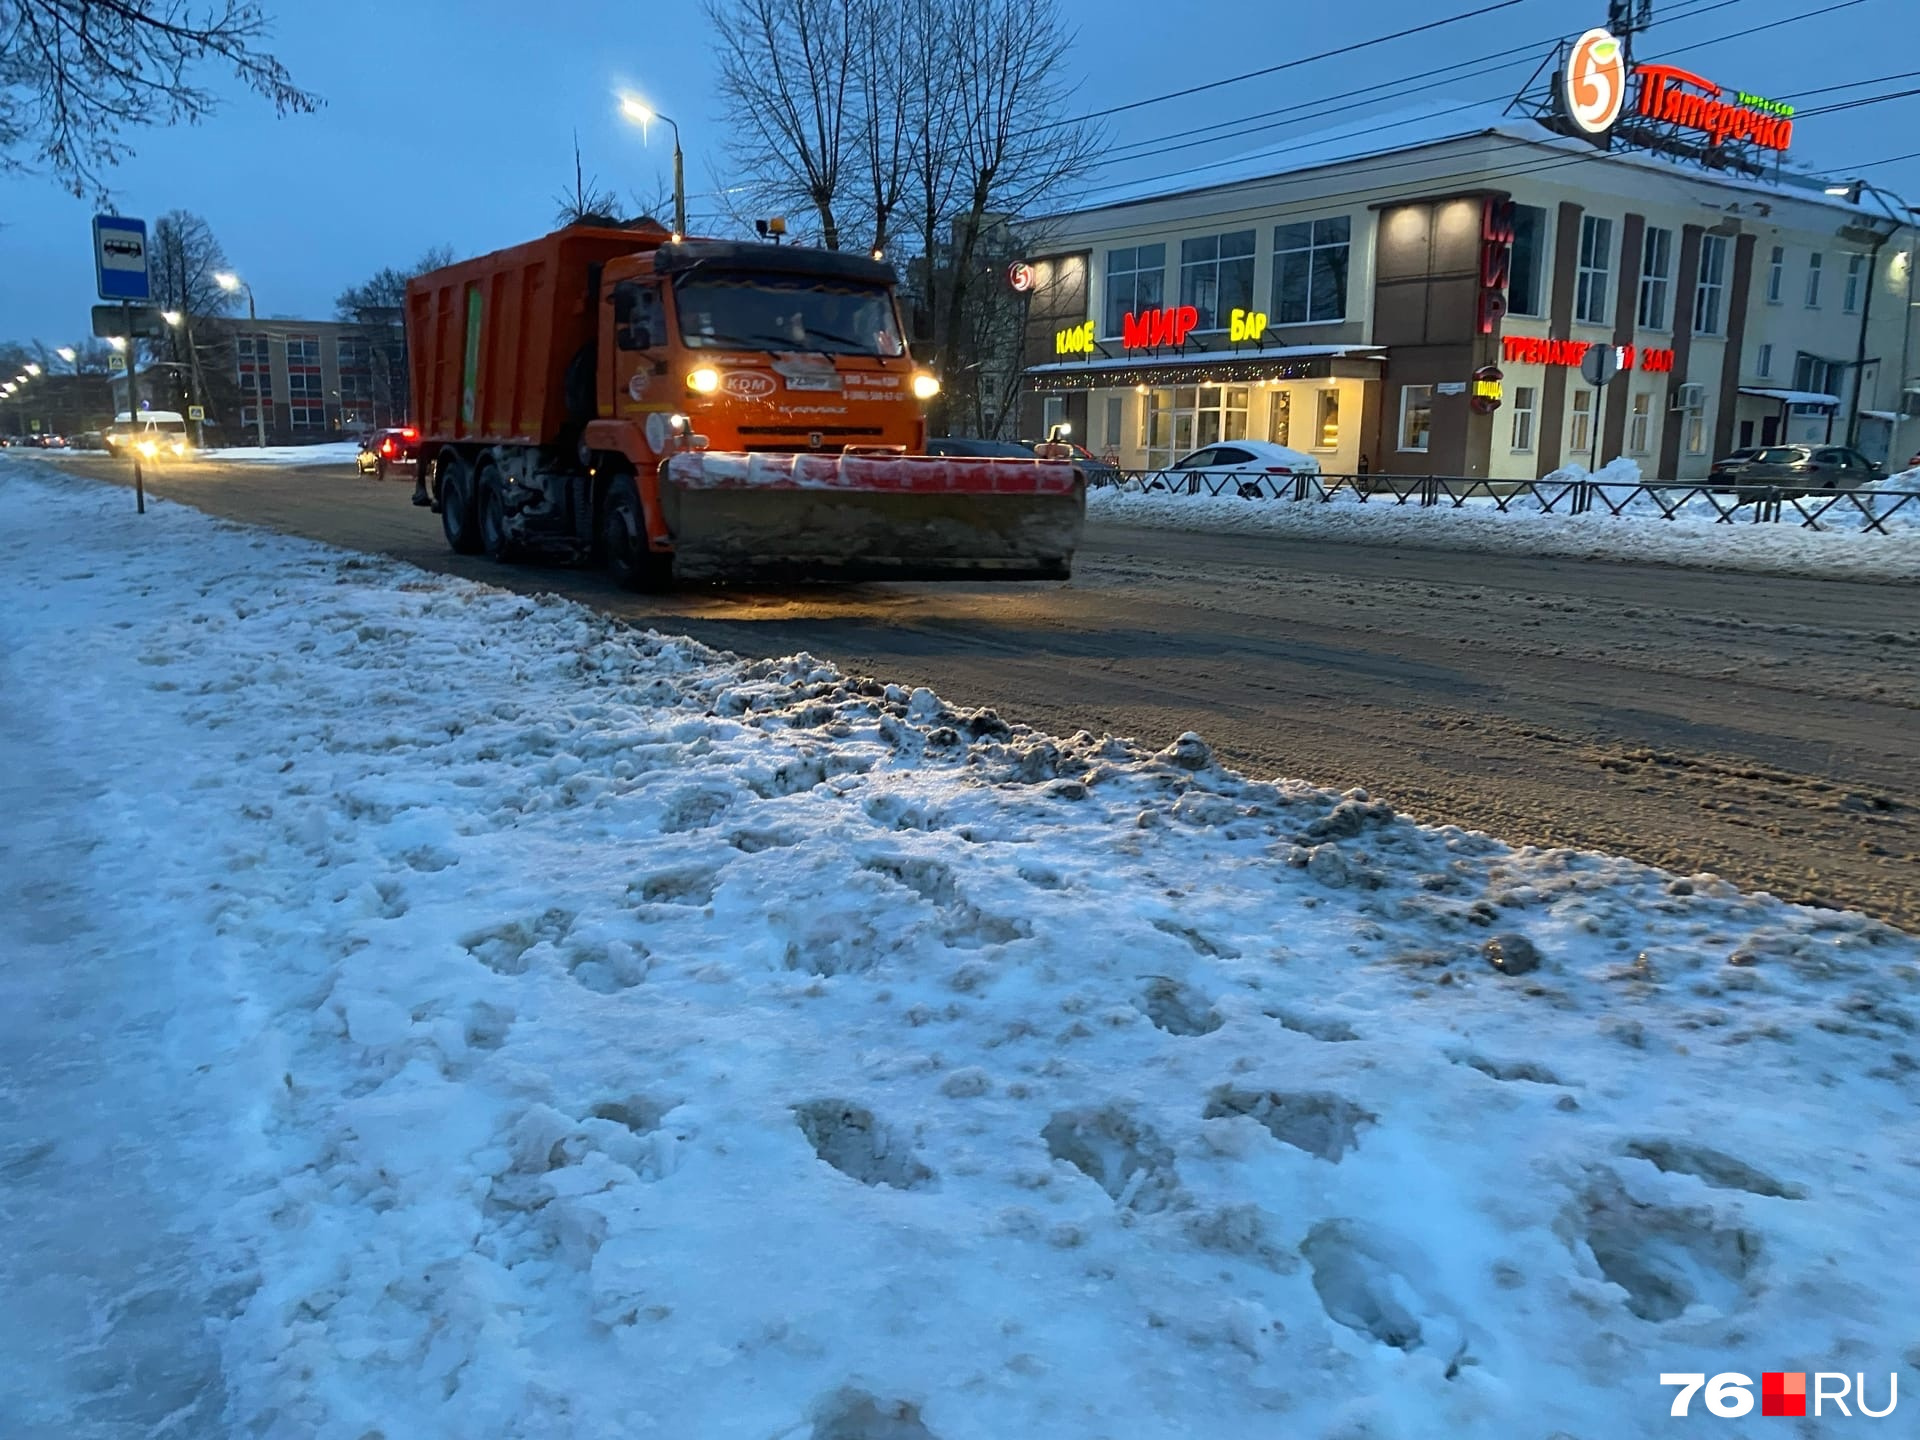 Снегоуборочная машина проехала по заснеженной дороге с поднятым ковшом